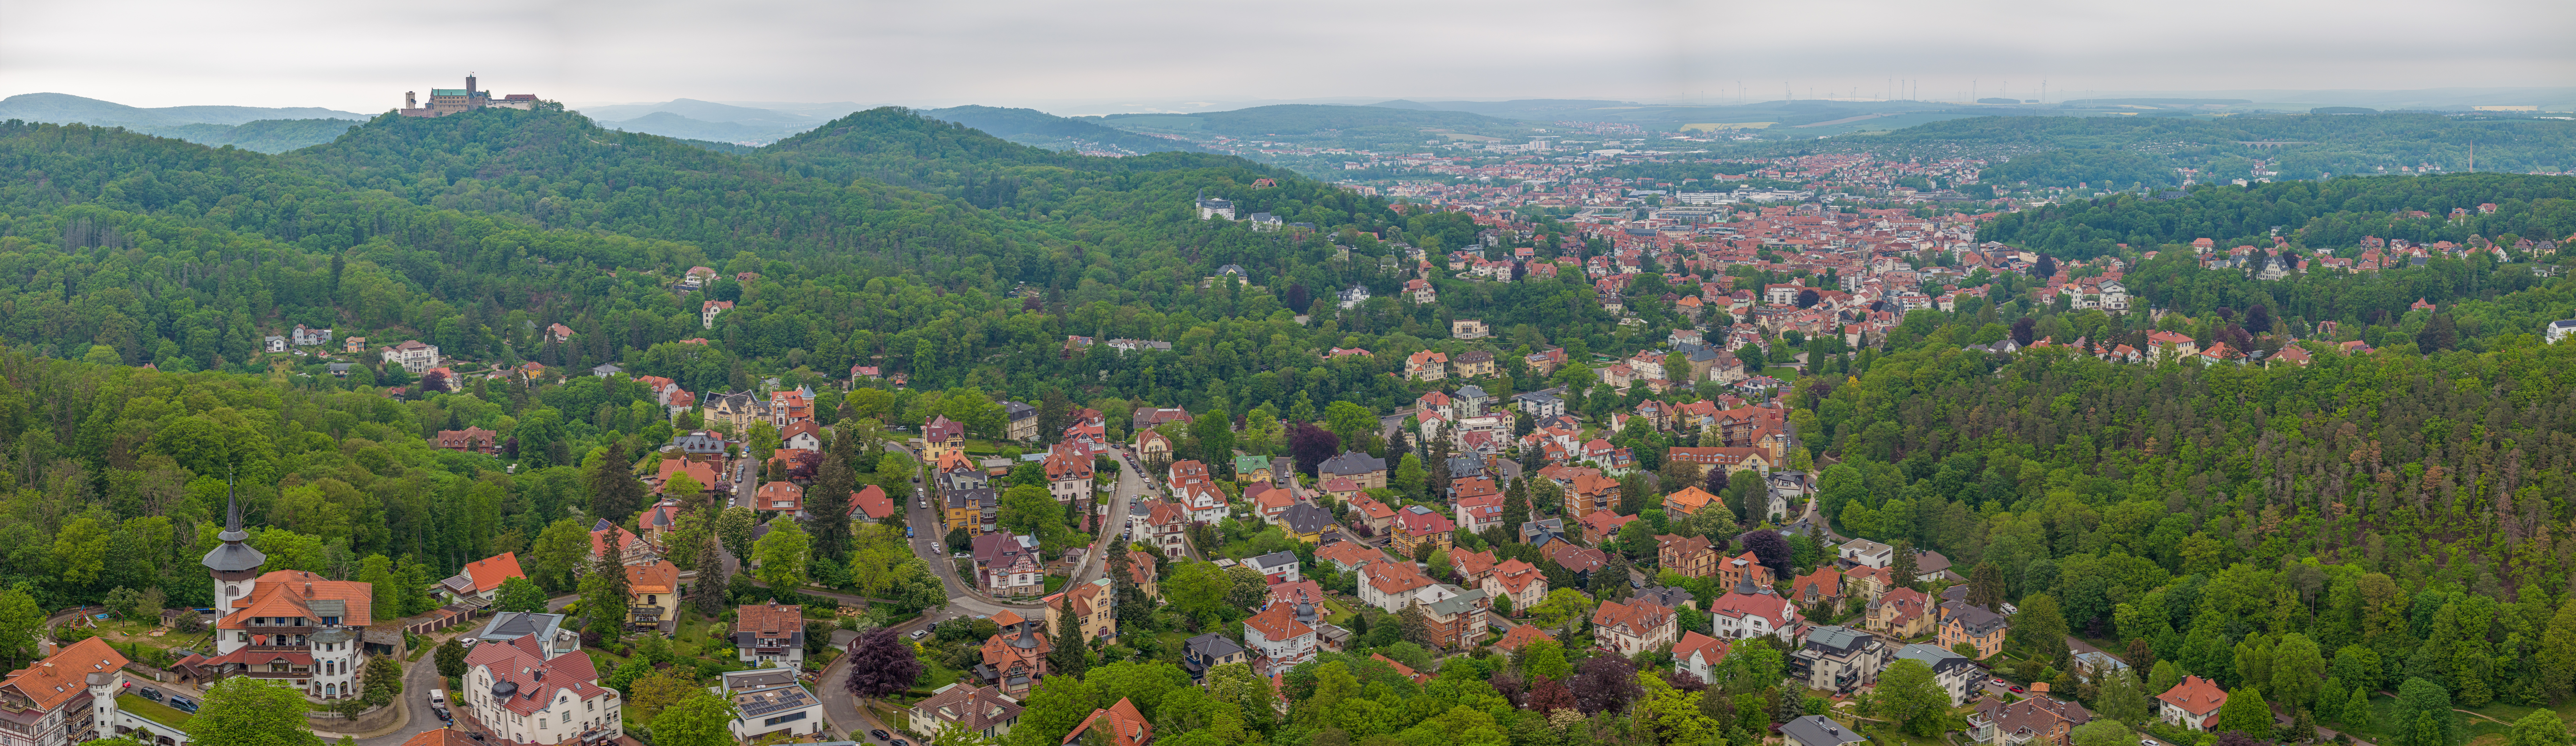 Blick über Eisenach zur Namensgeberin des Landkreises Wartburgkreis